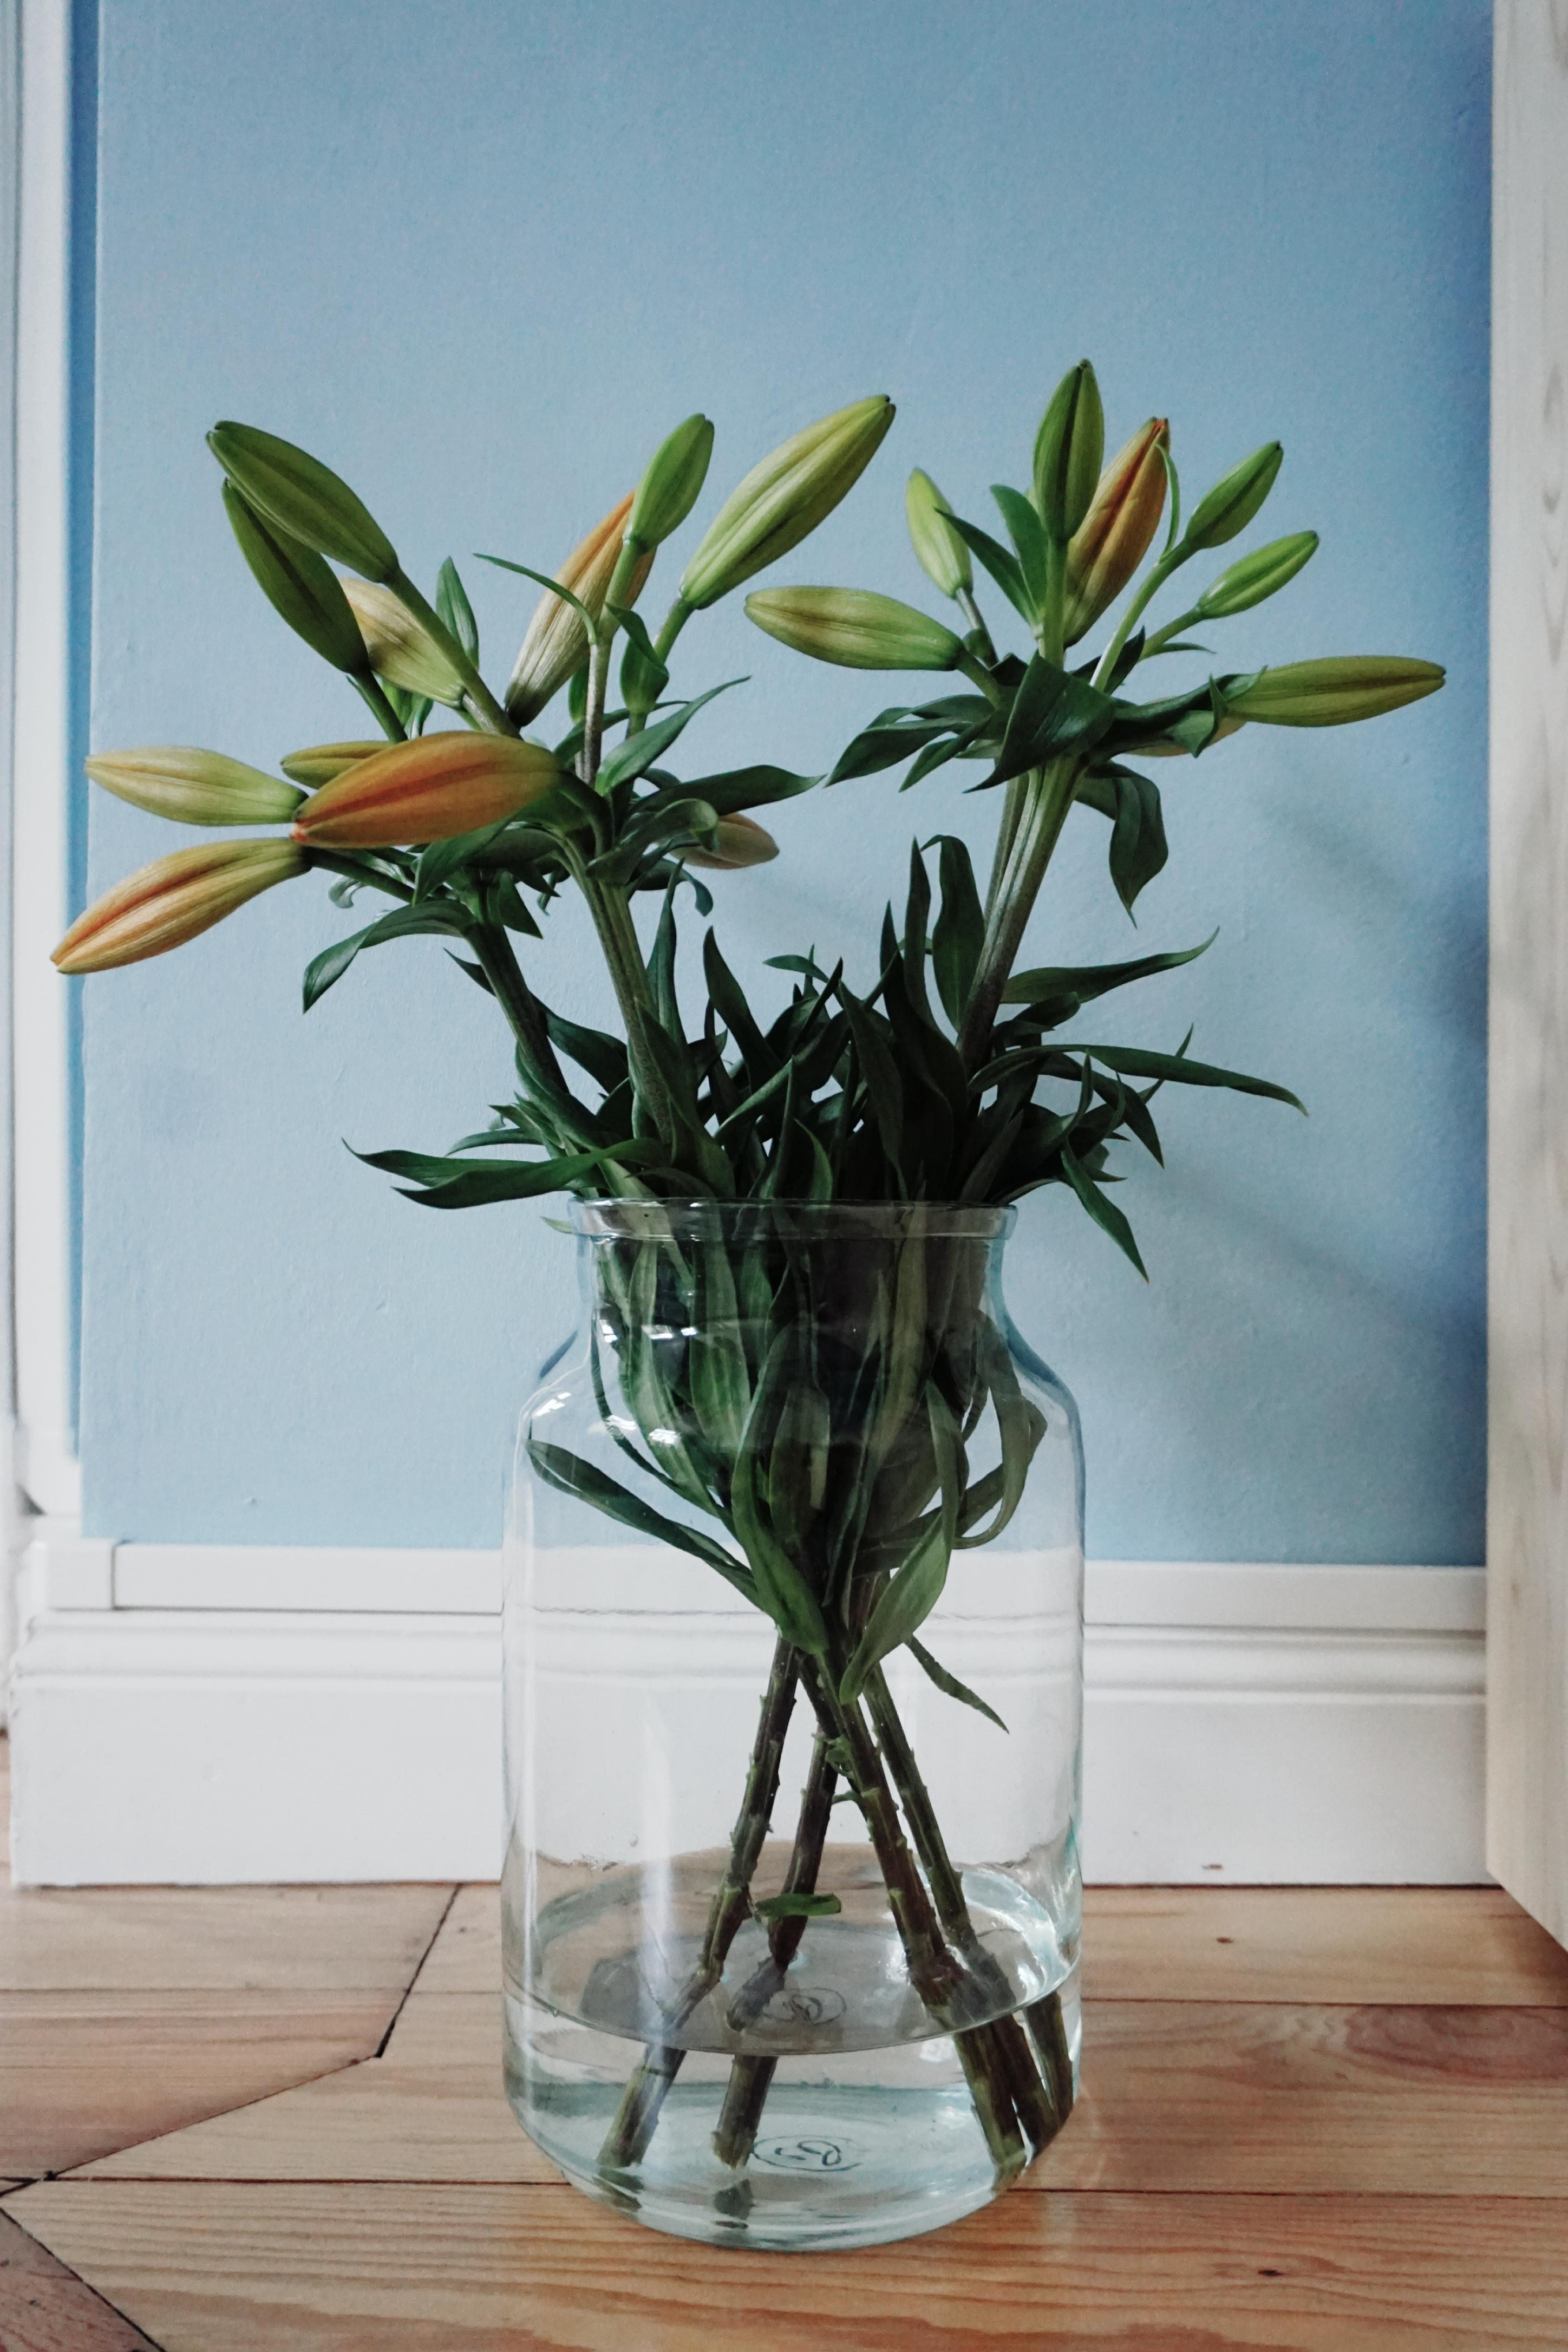 Lilien-Time ❤
#freshflowerfriday #lilien #flowers #altbau #altbauliebe #wohnzimmer